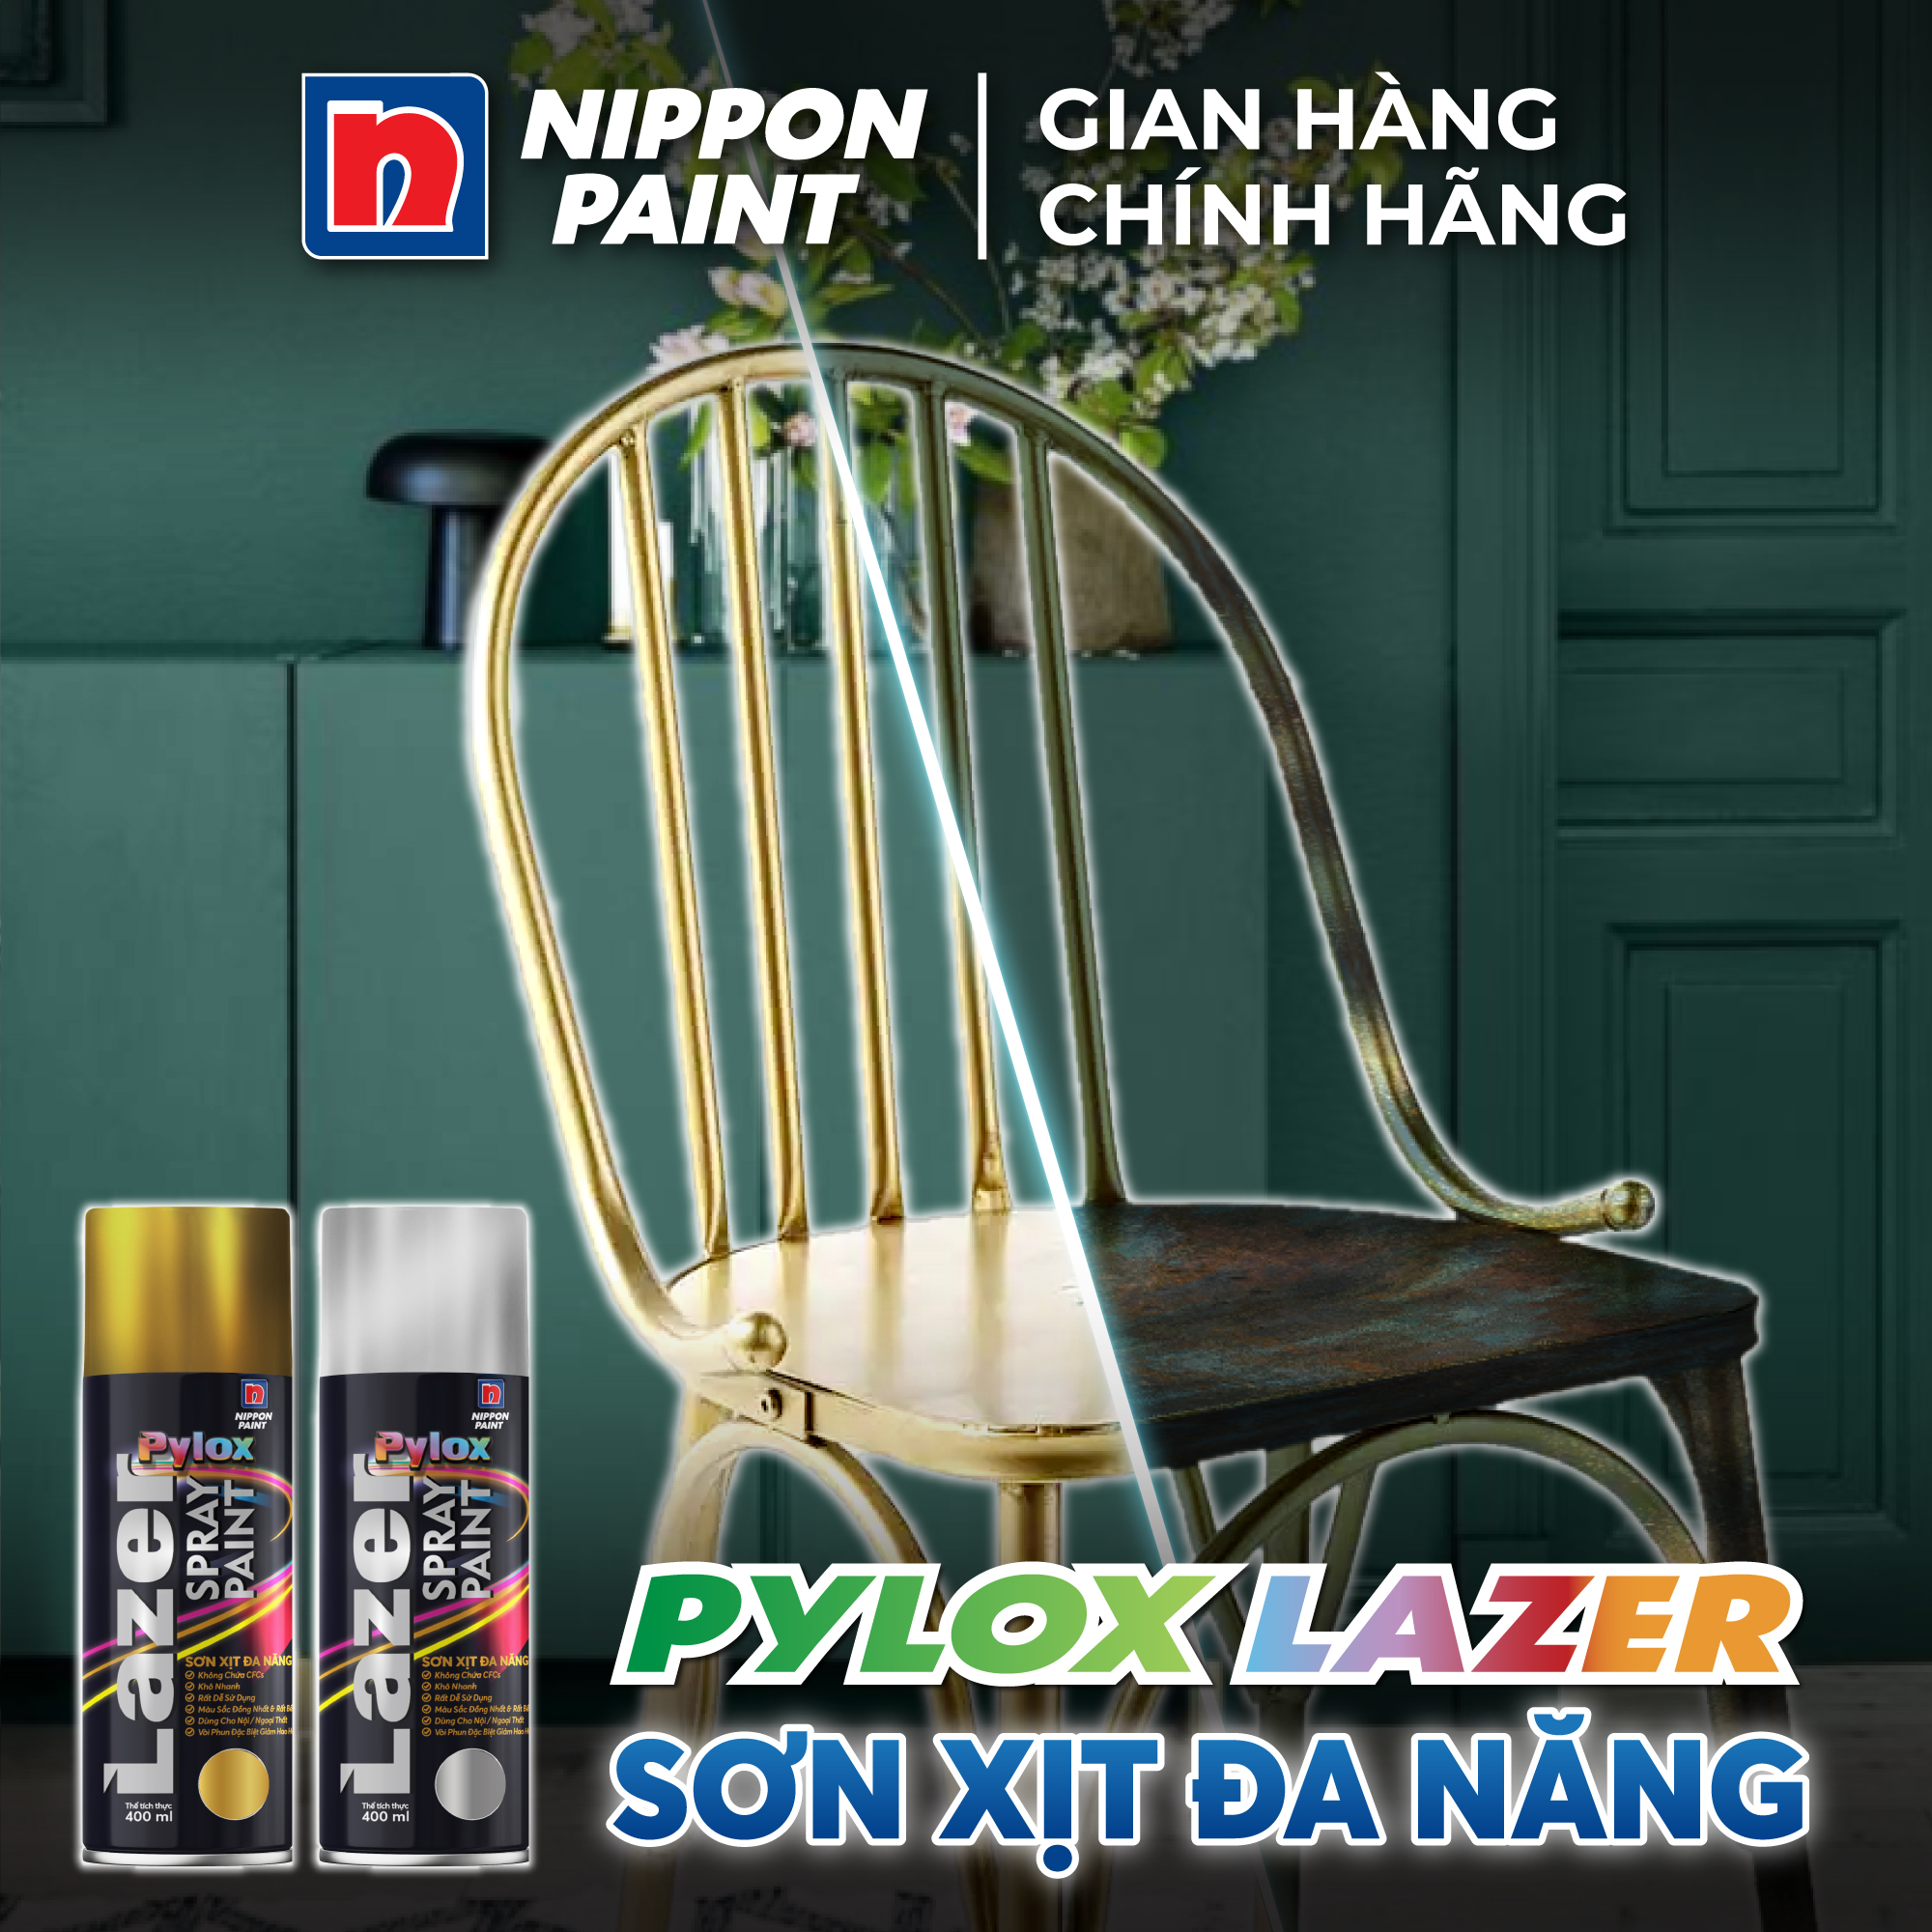 Sơn xịt đa năng Pylox Lazer | Nhóm màu thông dụng | Chính hãng NIPPON PAINT - Dung tích 400ml